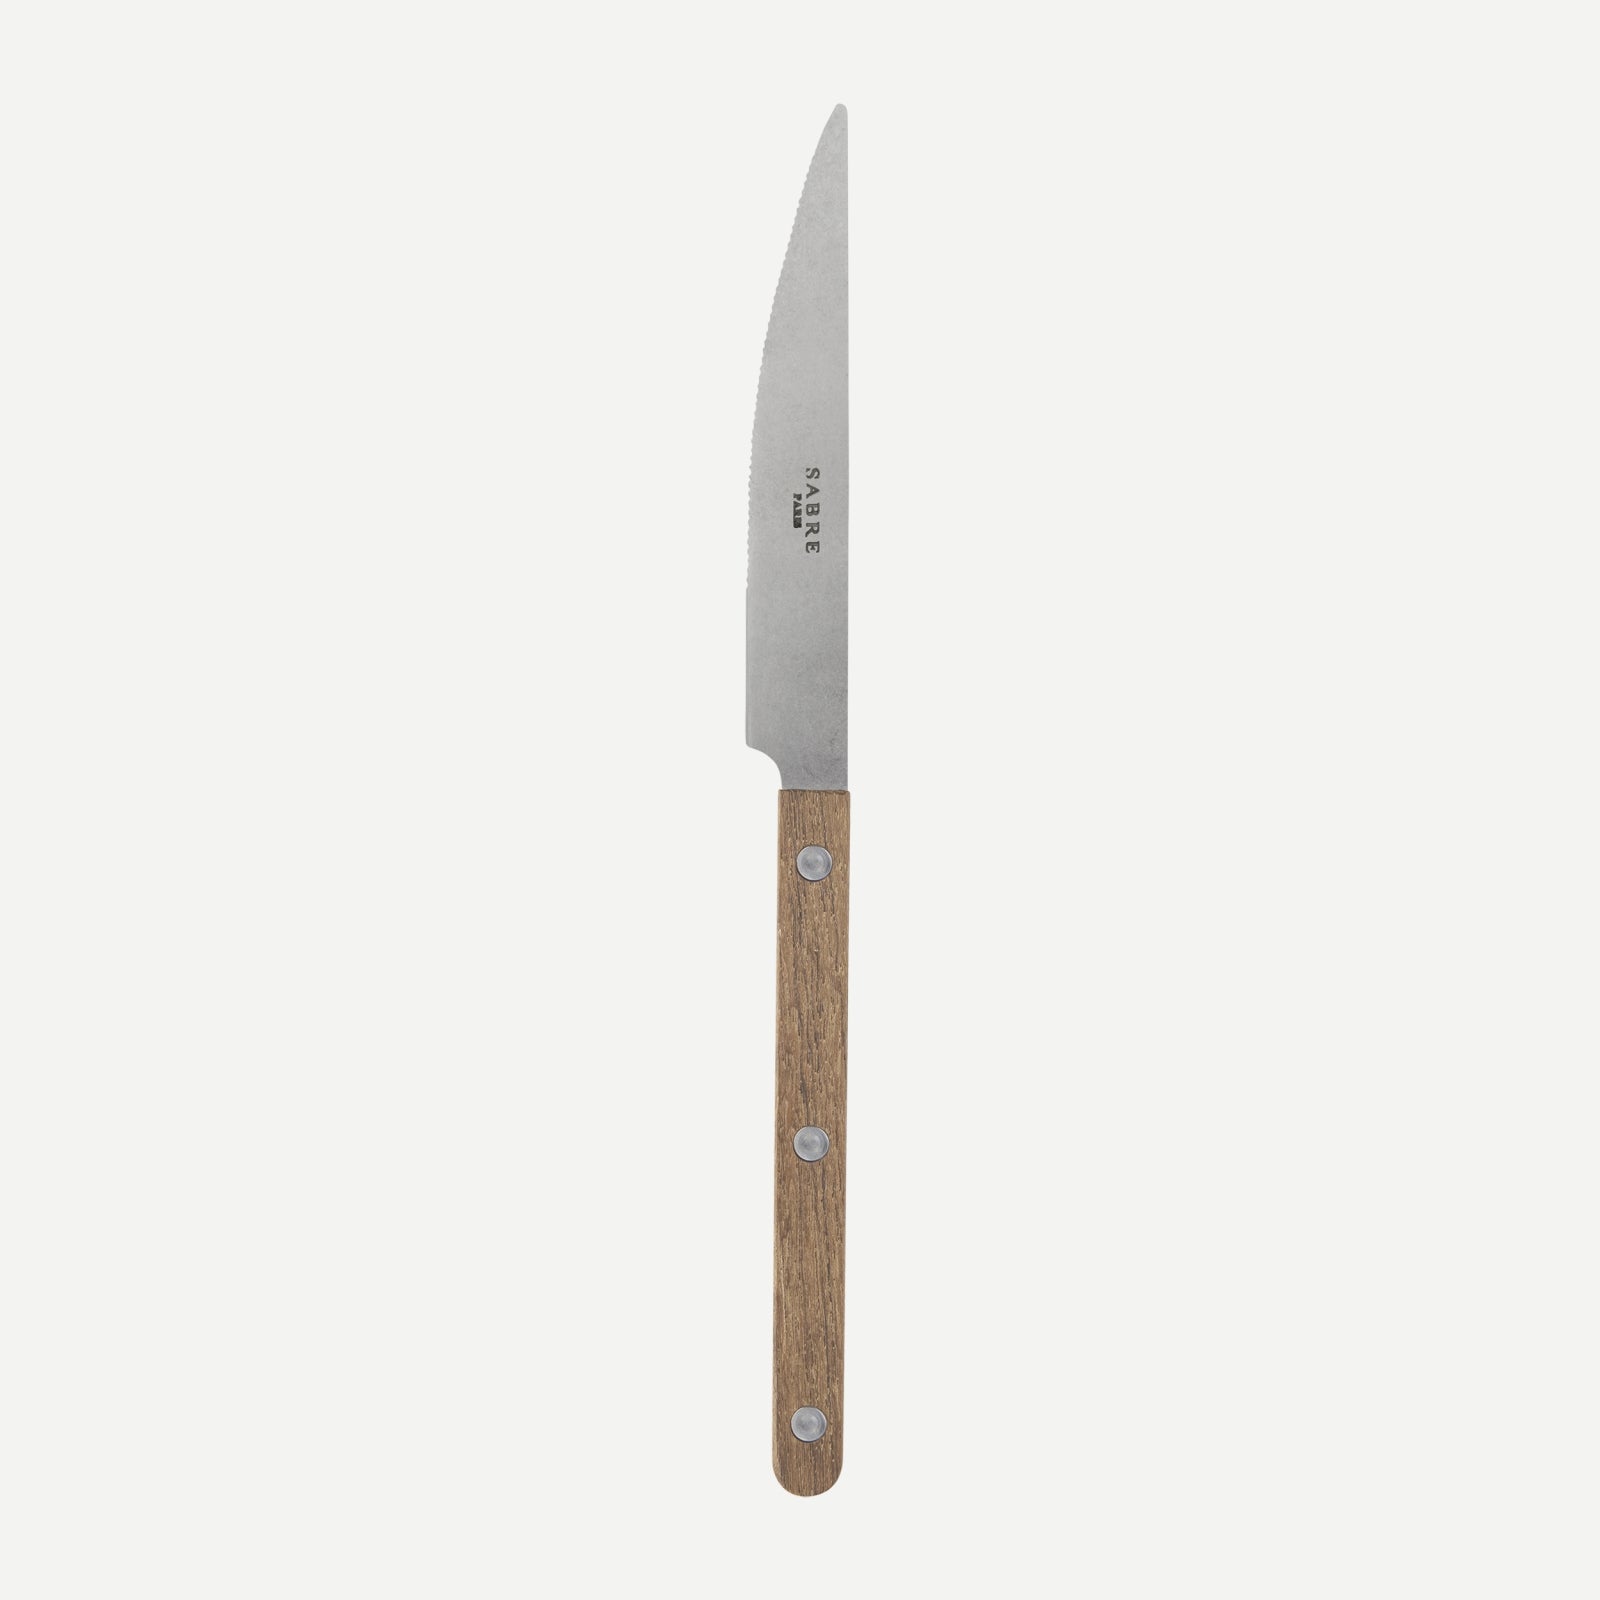 Dinner knife - Bistrot vintage teak - Teak